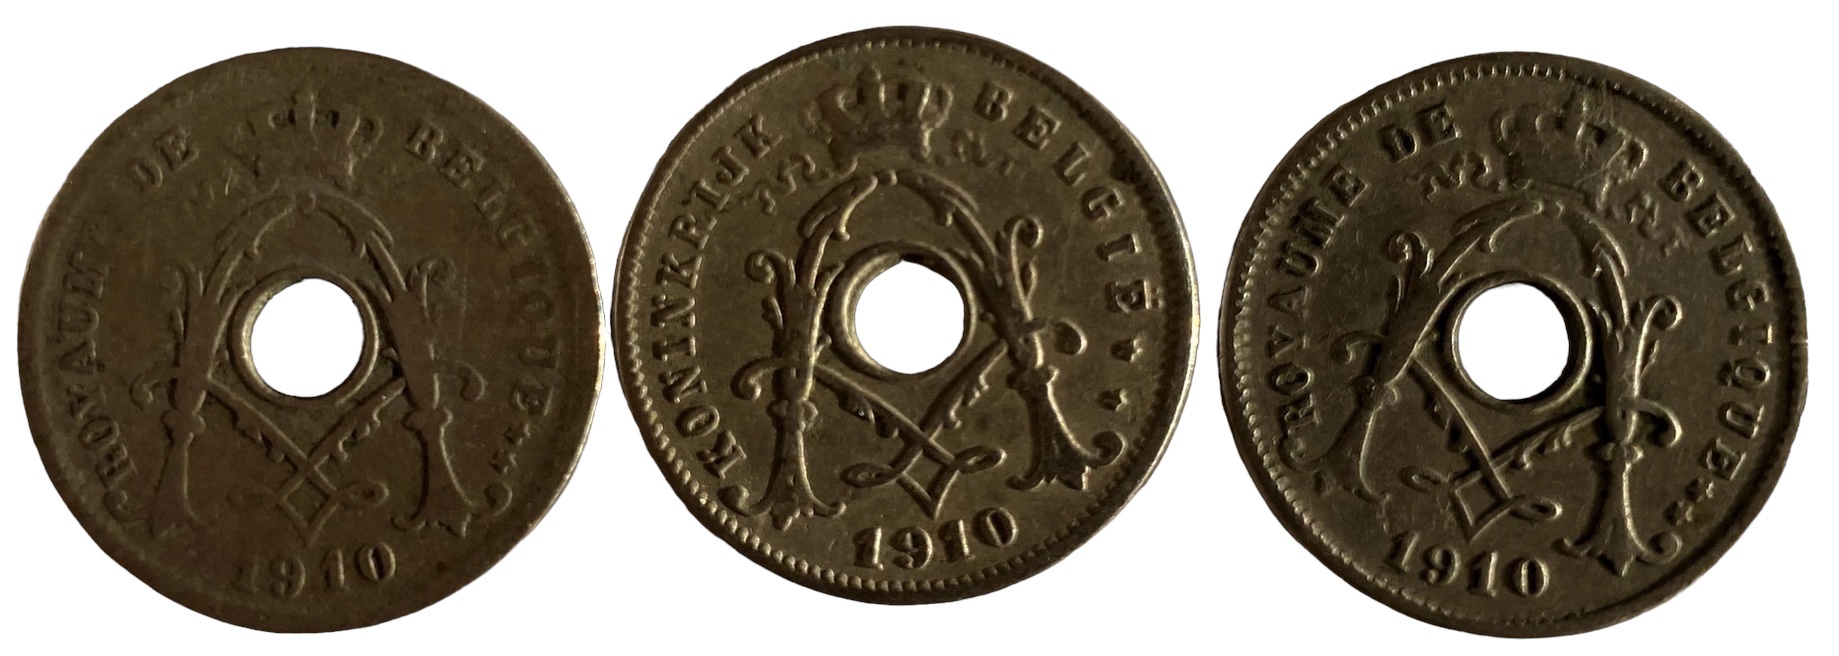 Иностранная монета 5 сантимов Бельгия 1910 год